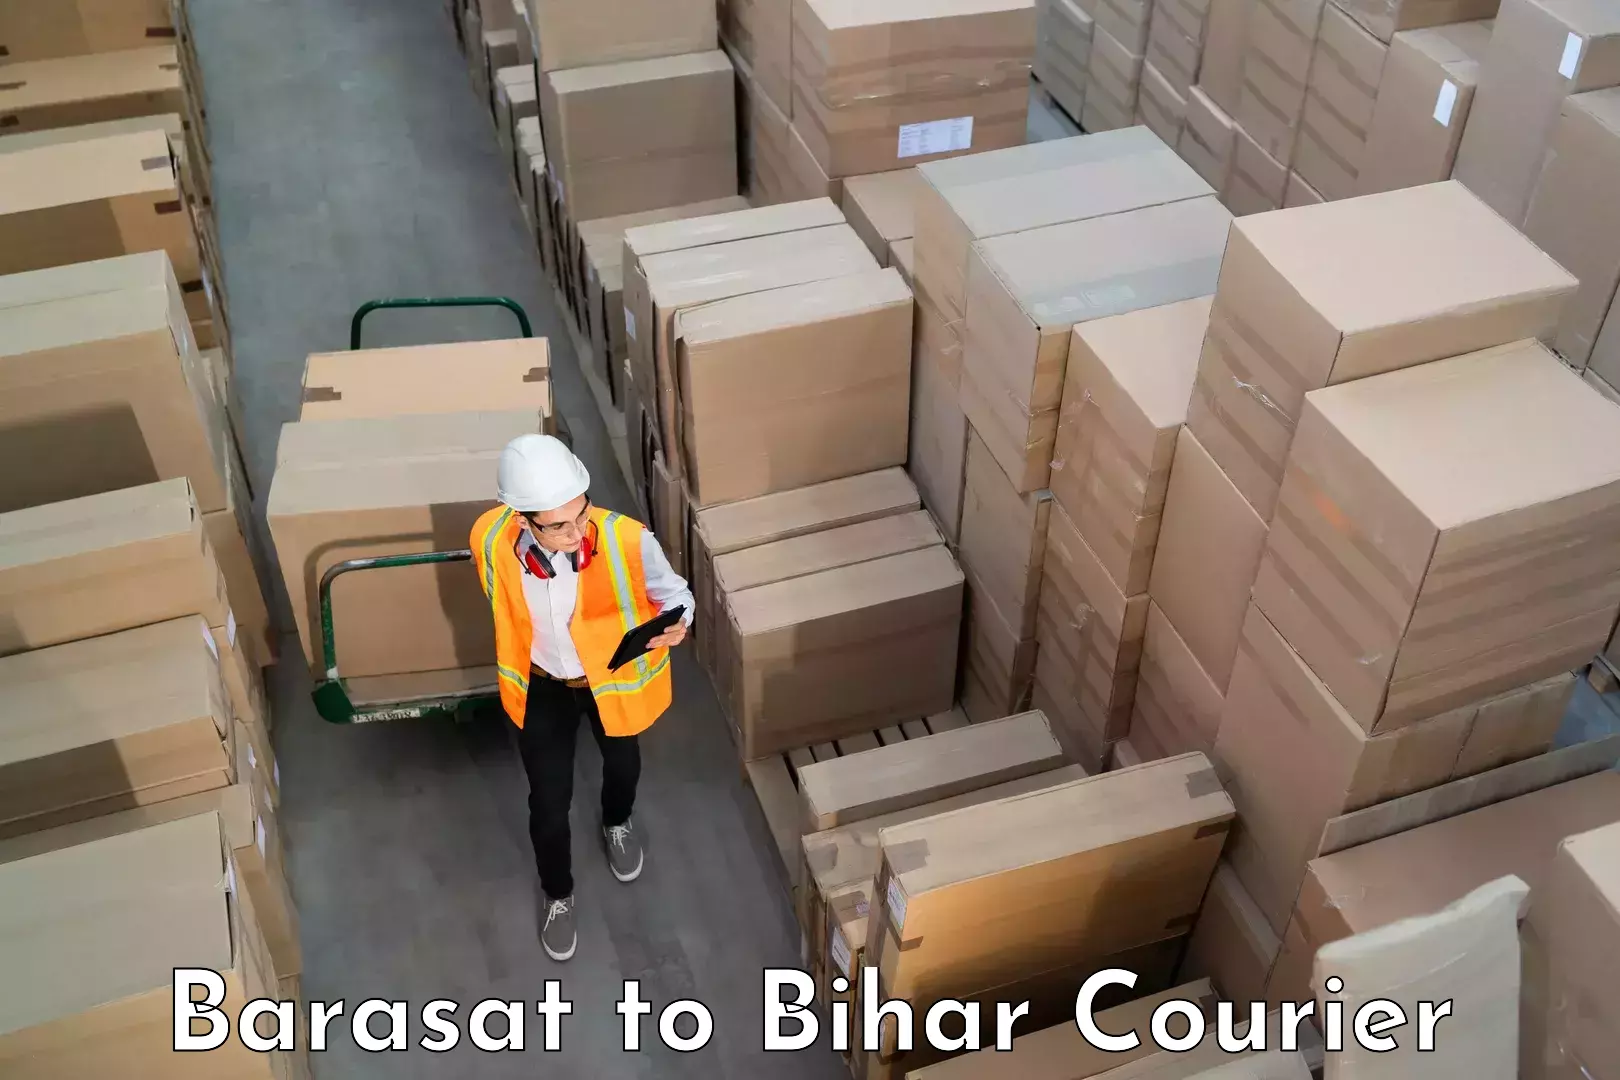 Luggage transport consultancy Barasat to Thakurganj